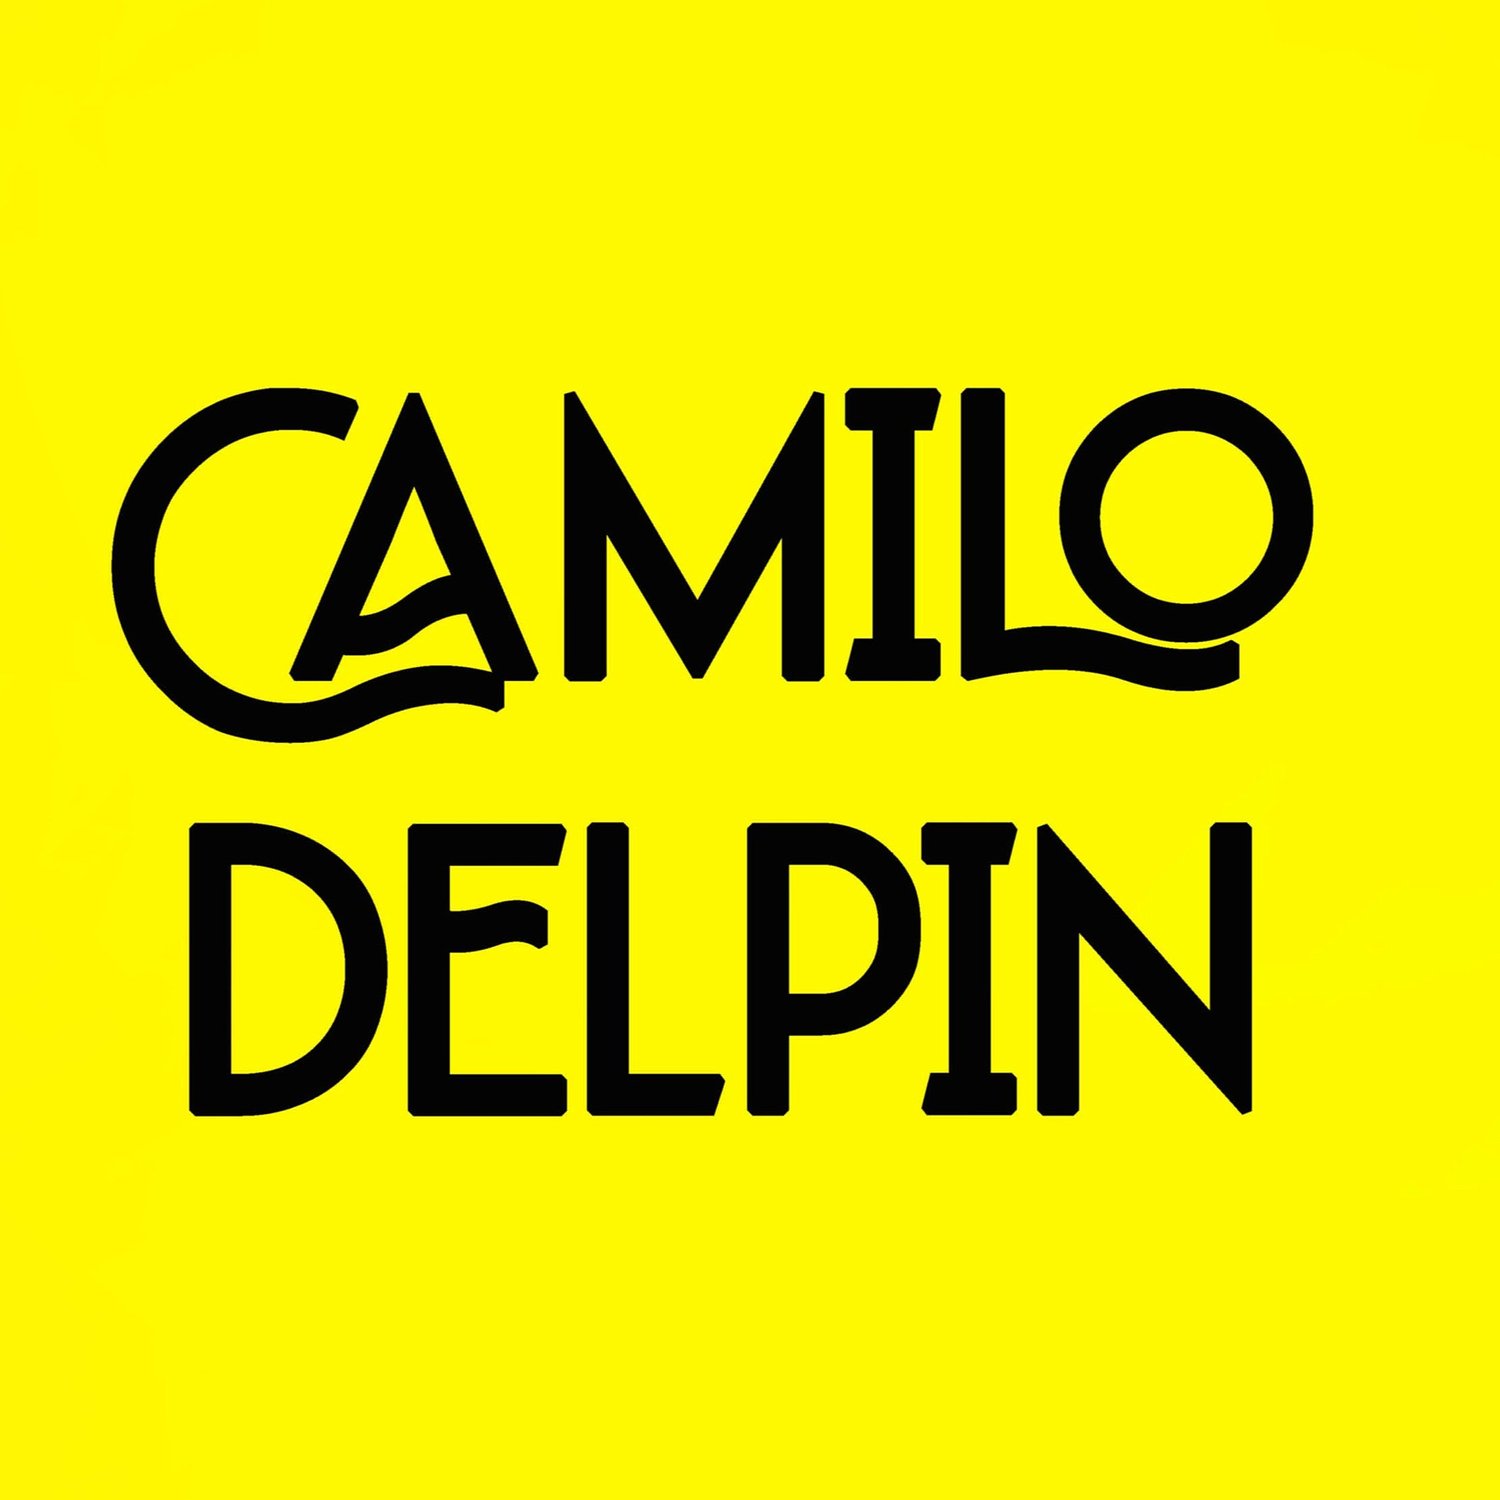 CAMILO DELPIN